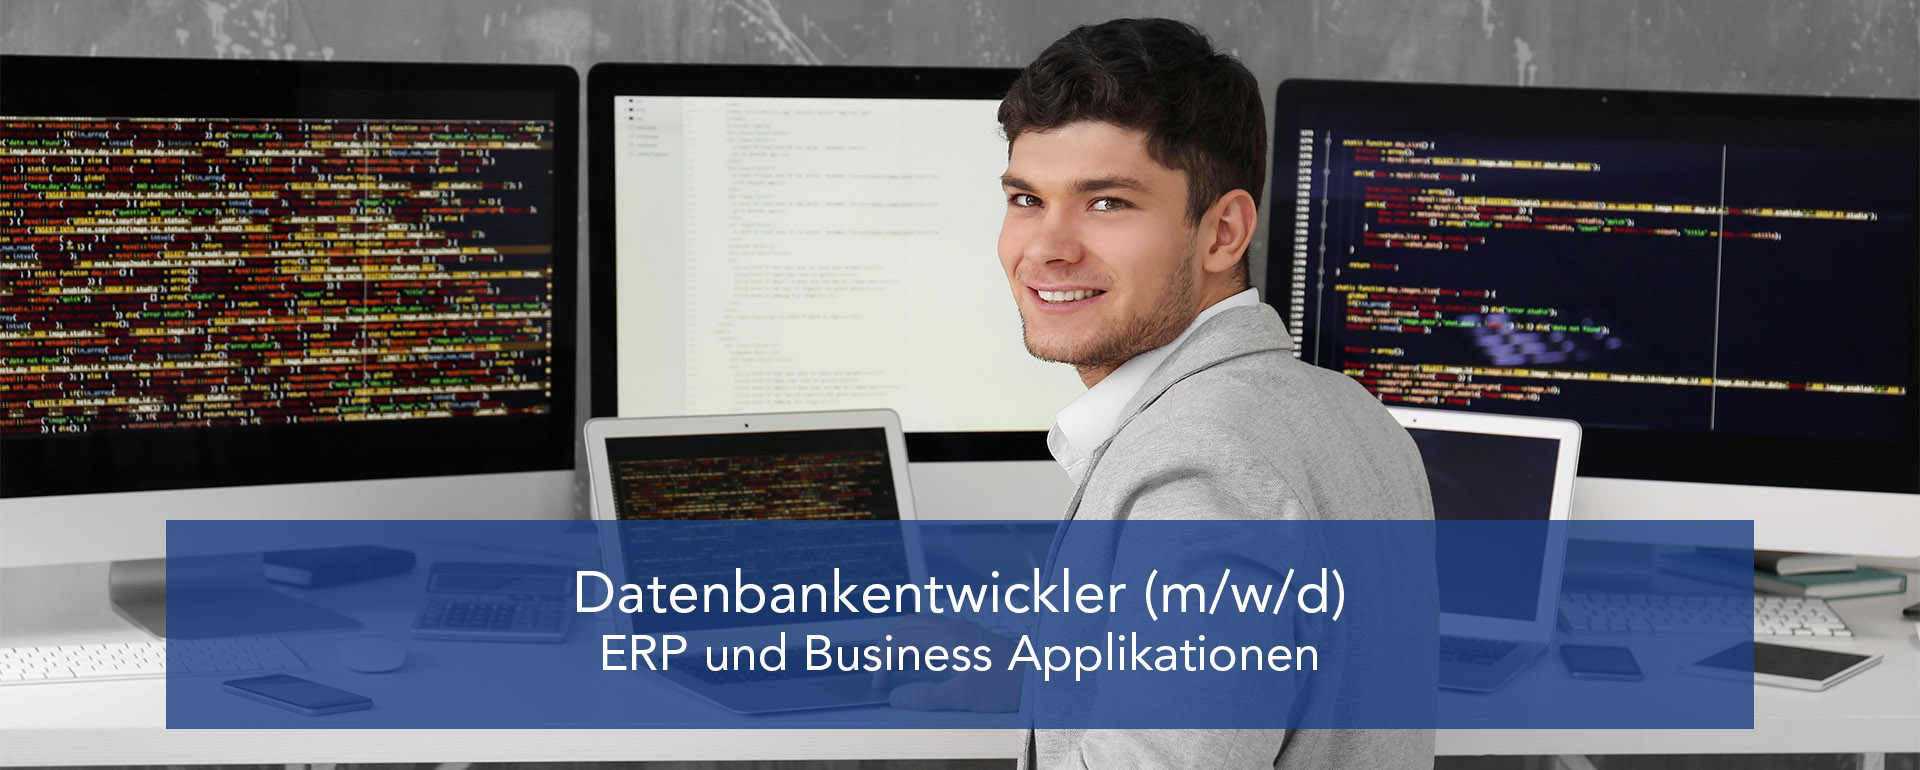 Datenbank-Entwickler (m/w/d) ERP und Business Applikationen 